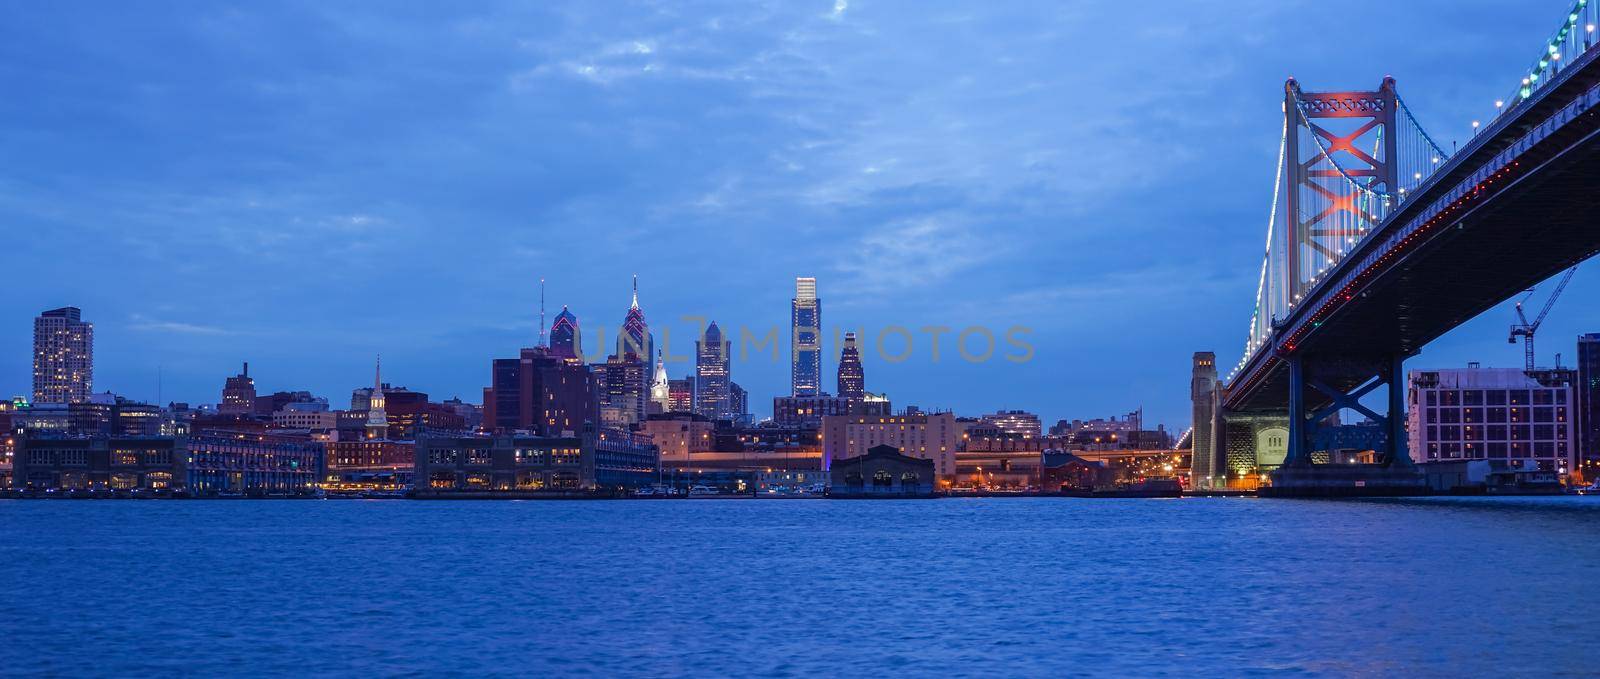 Philadelphia skyline  by f11photo